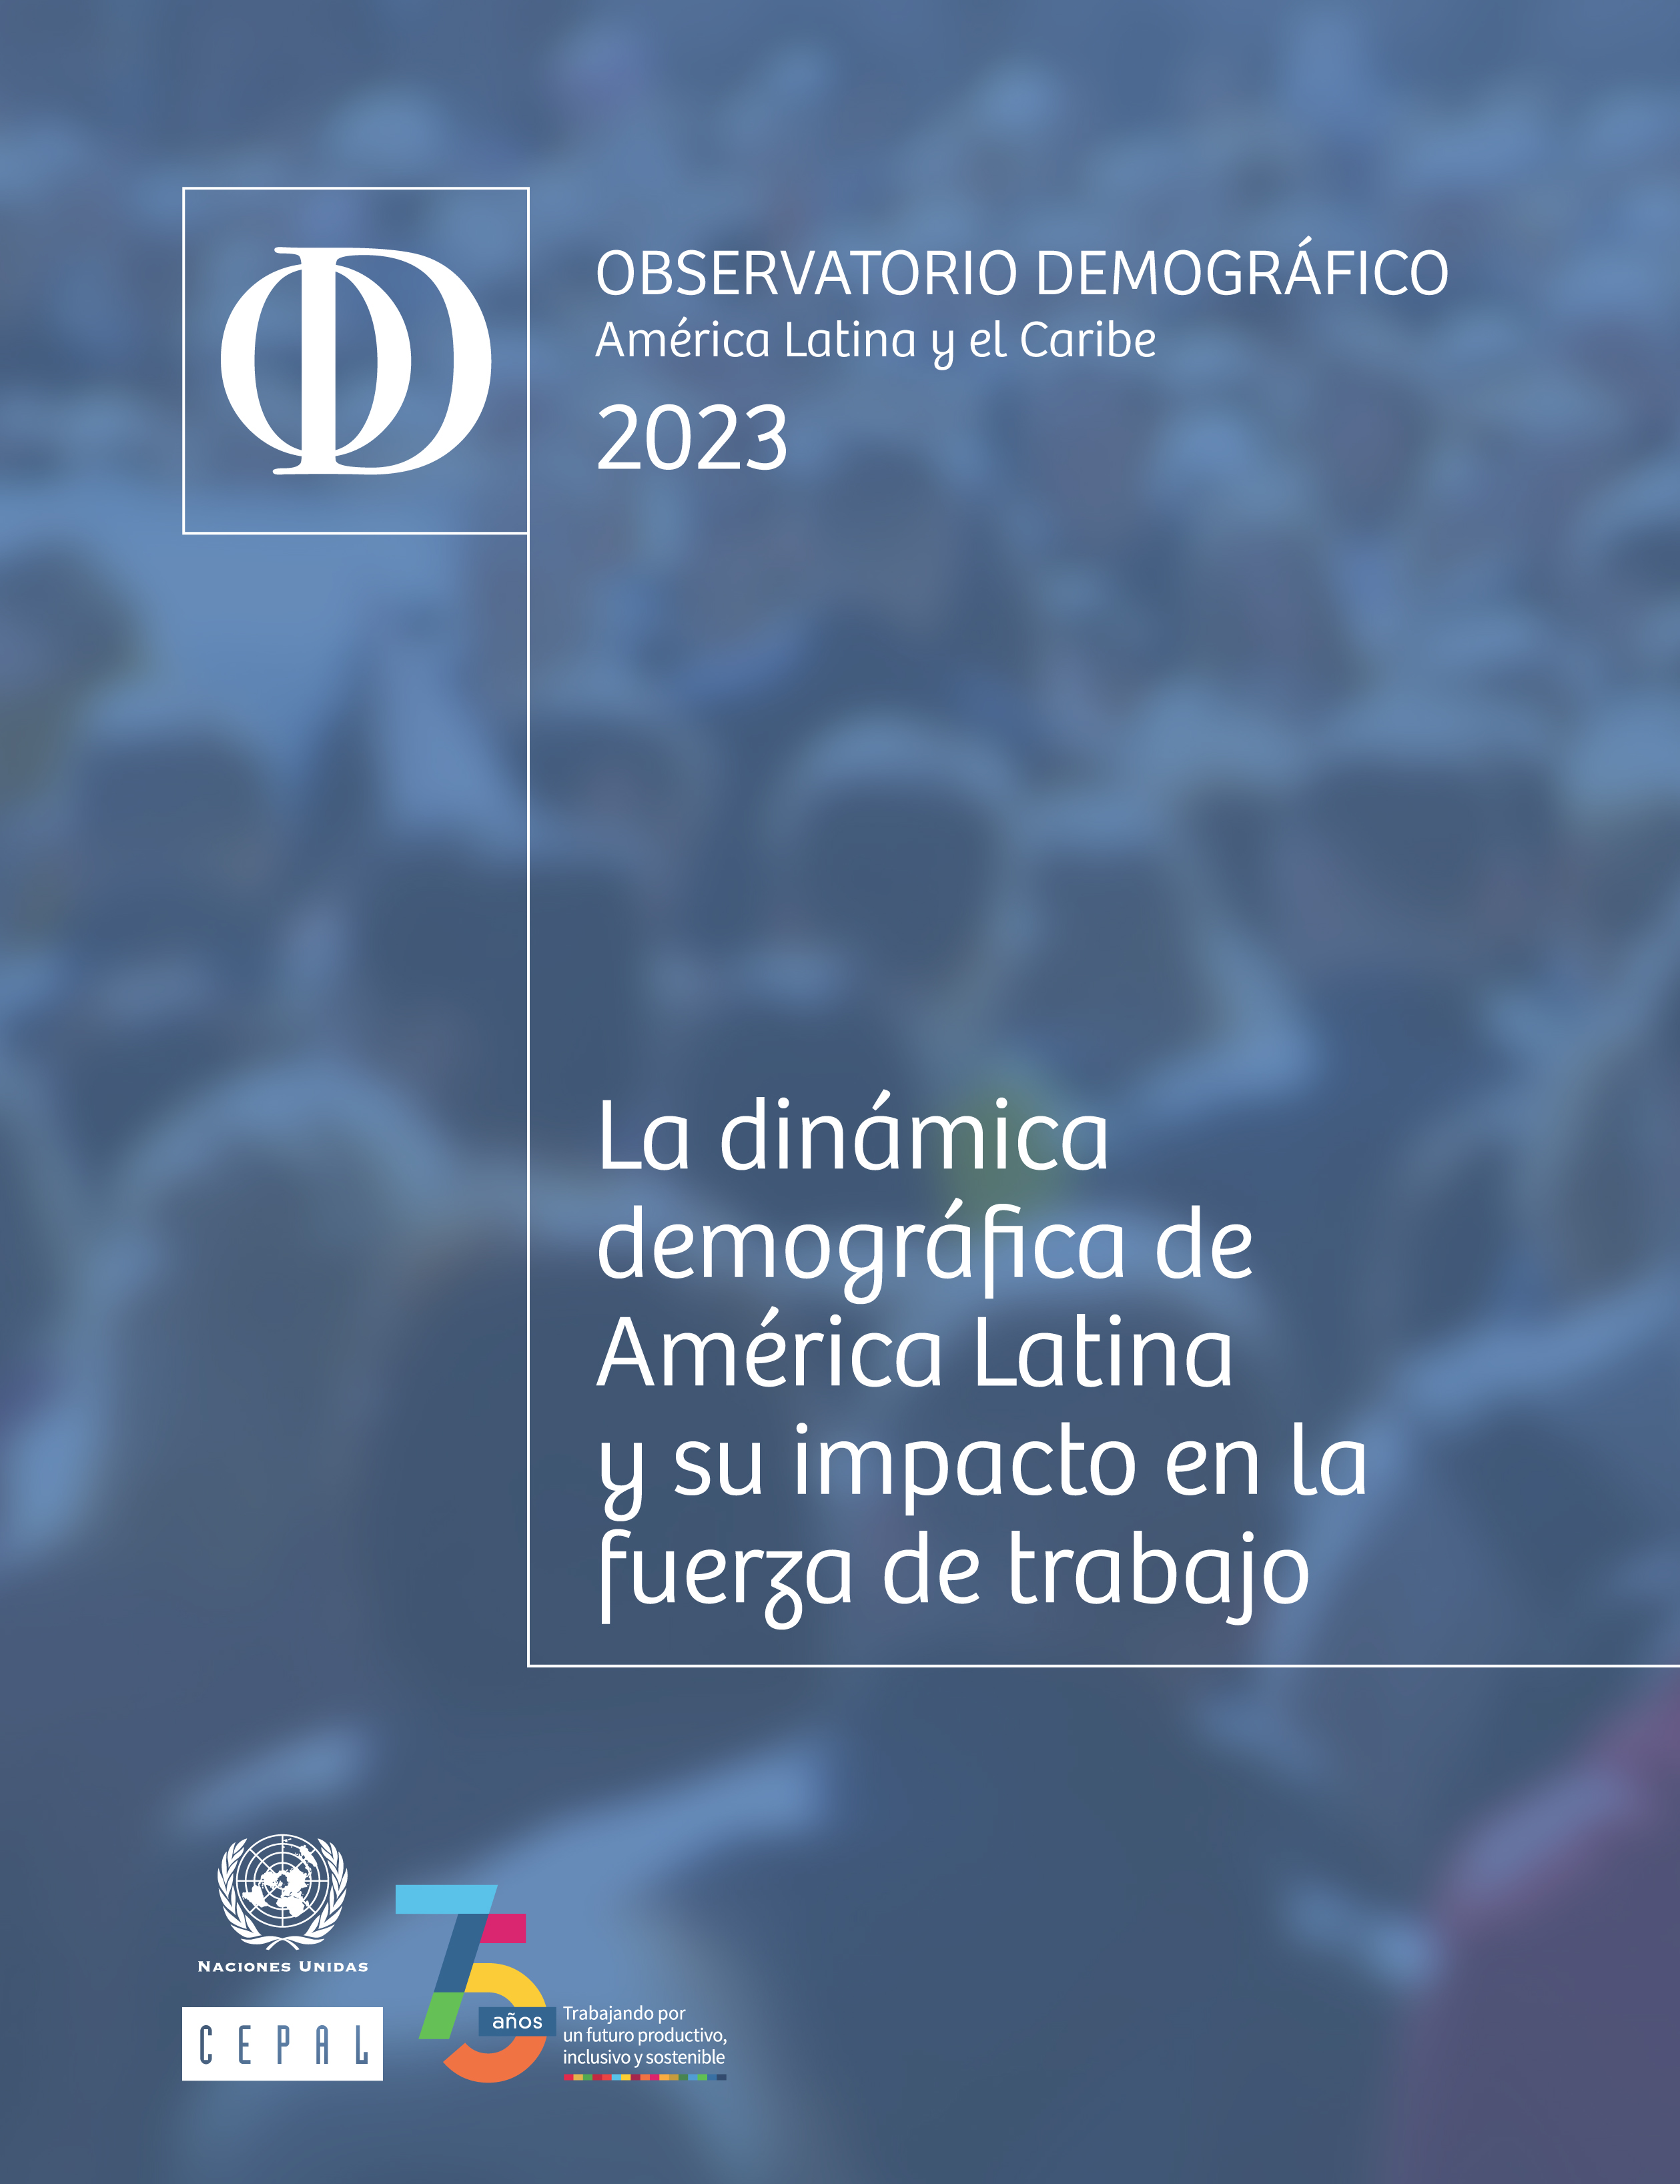 image of Observatorio Demográfico América Latina y el Caribe 2023